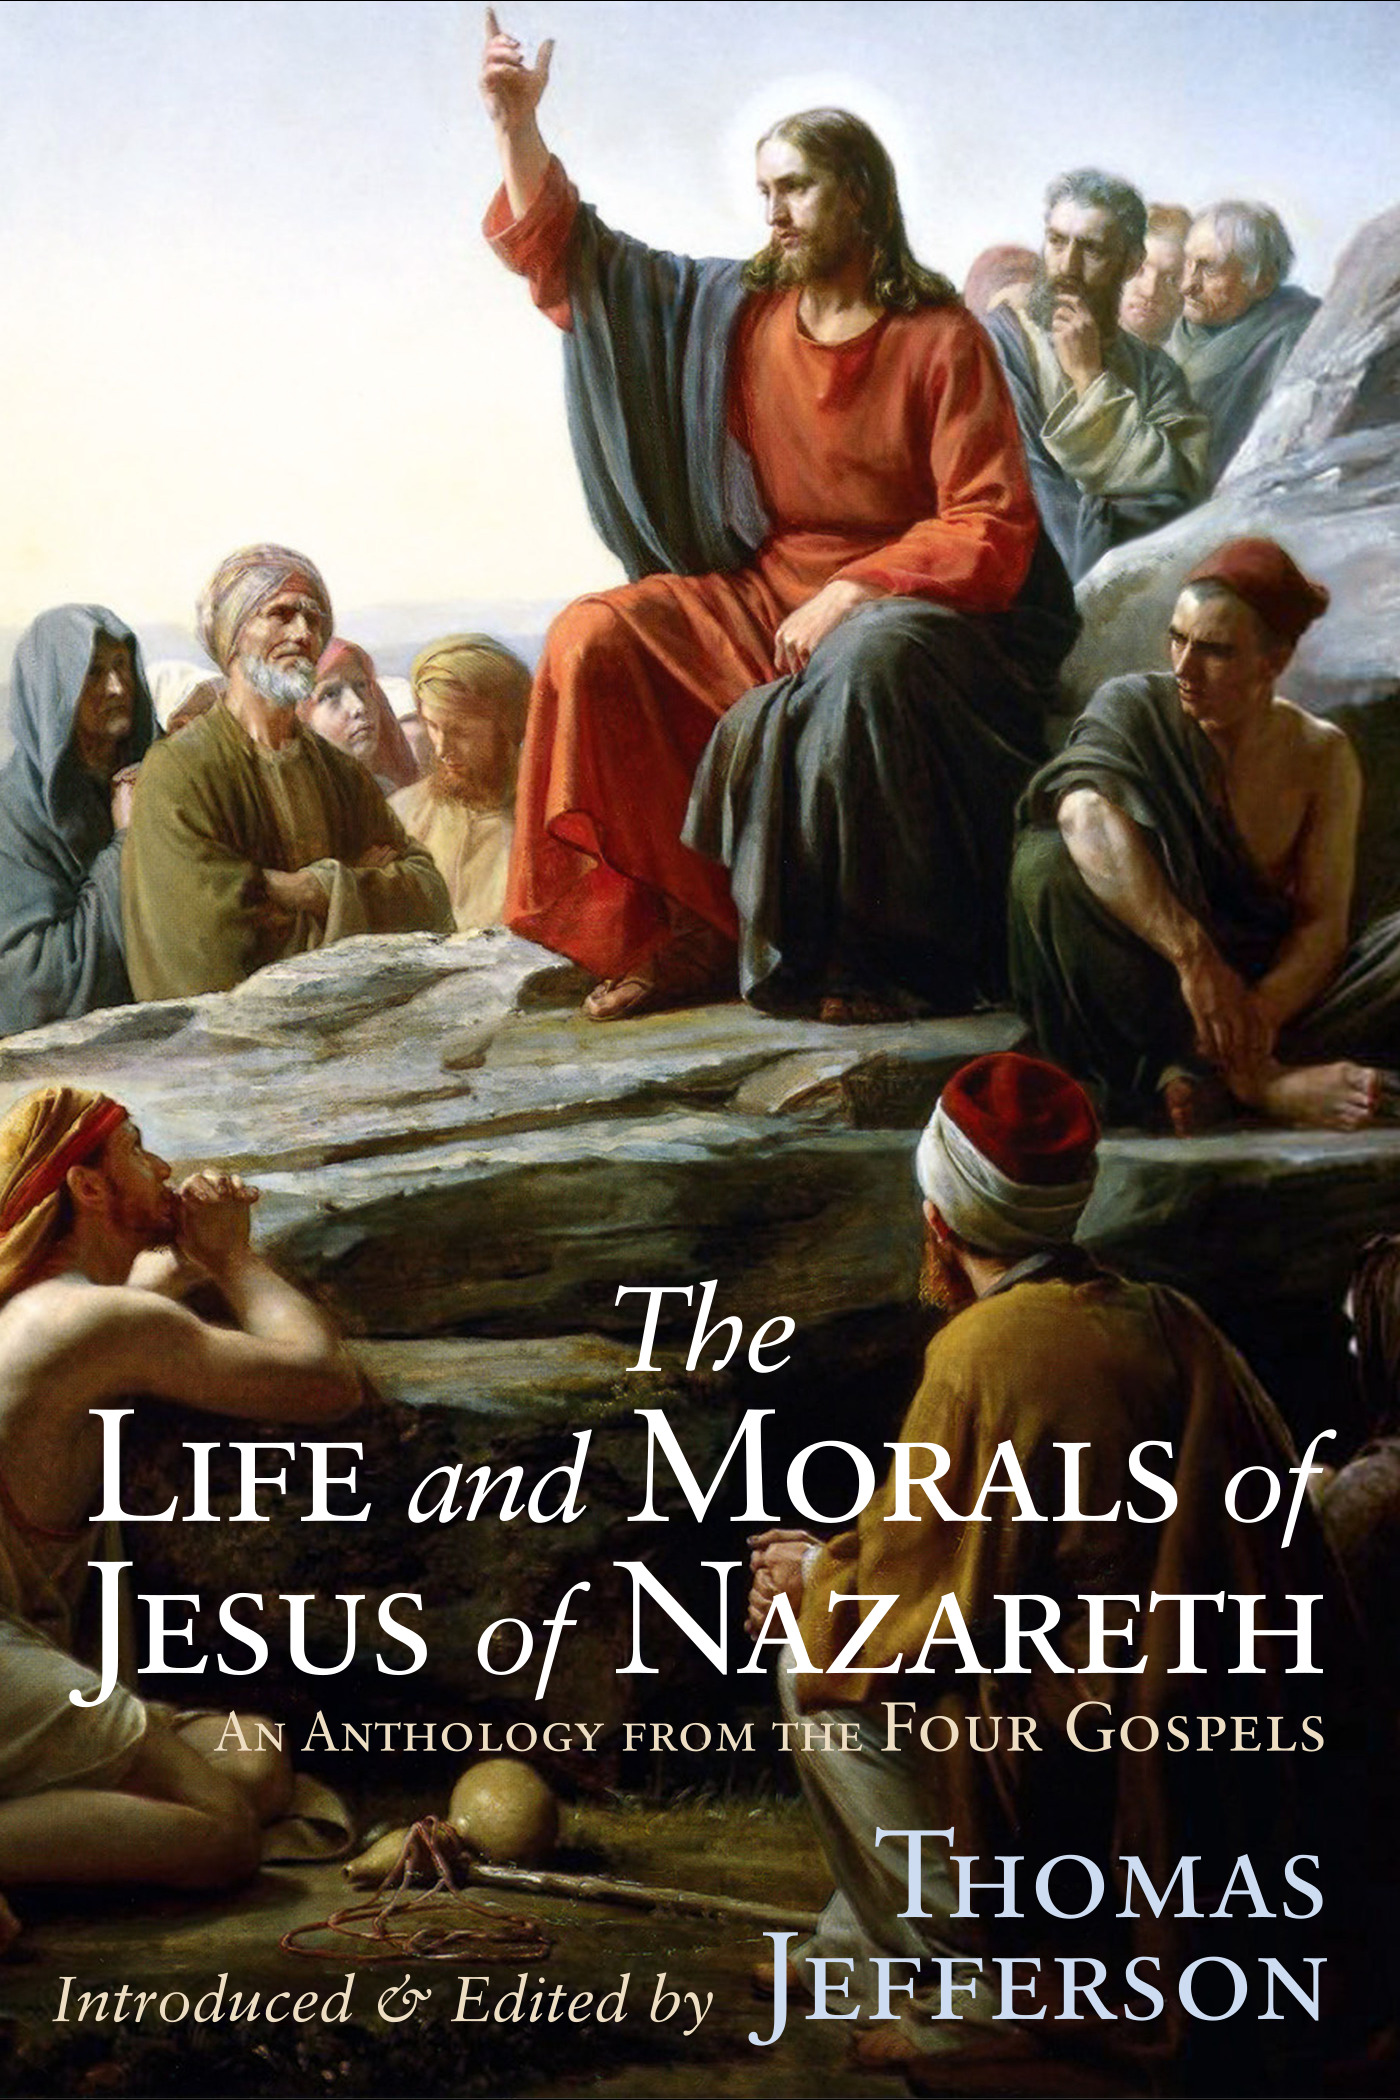 The Life & Teachings of Jesus of Nazareth, edited by Thomas Jefferson